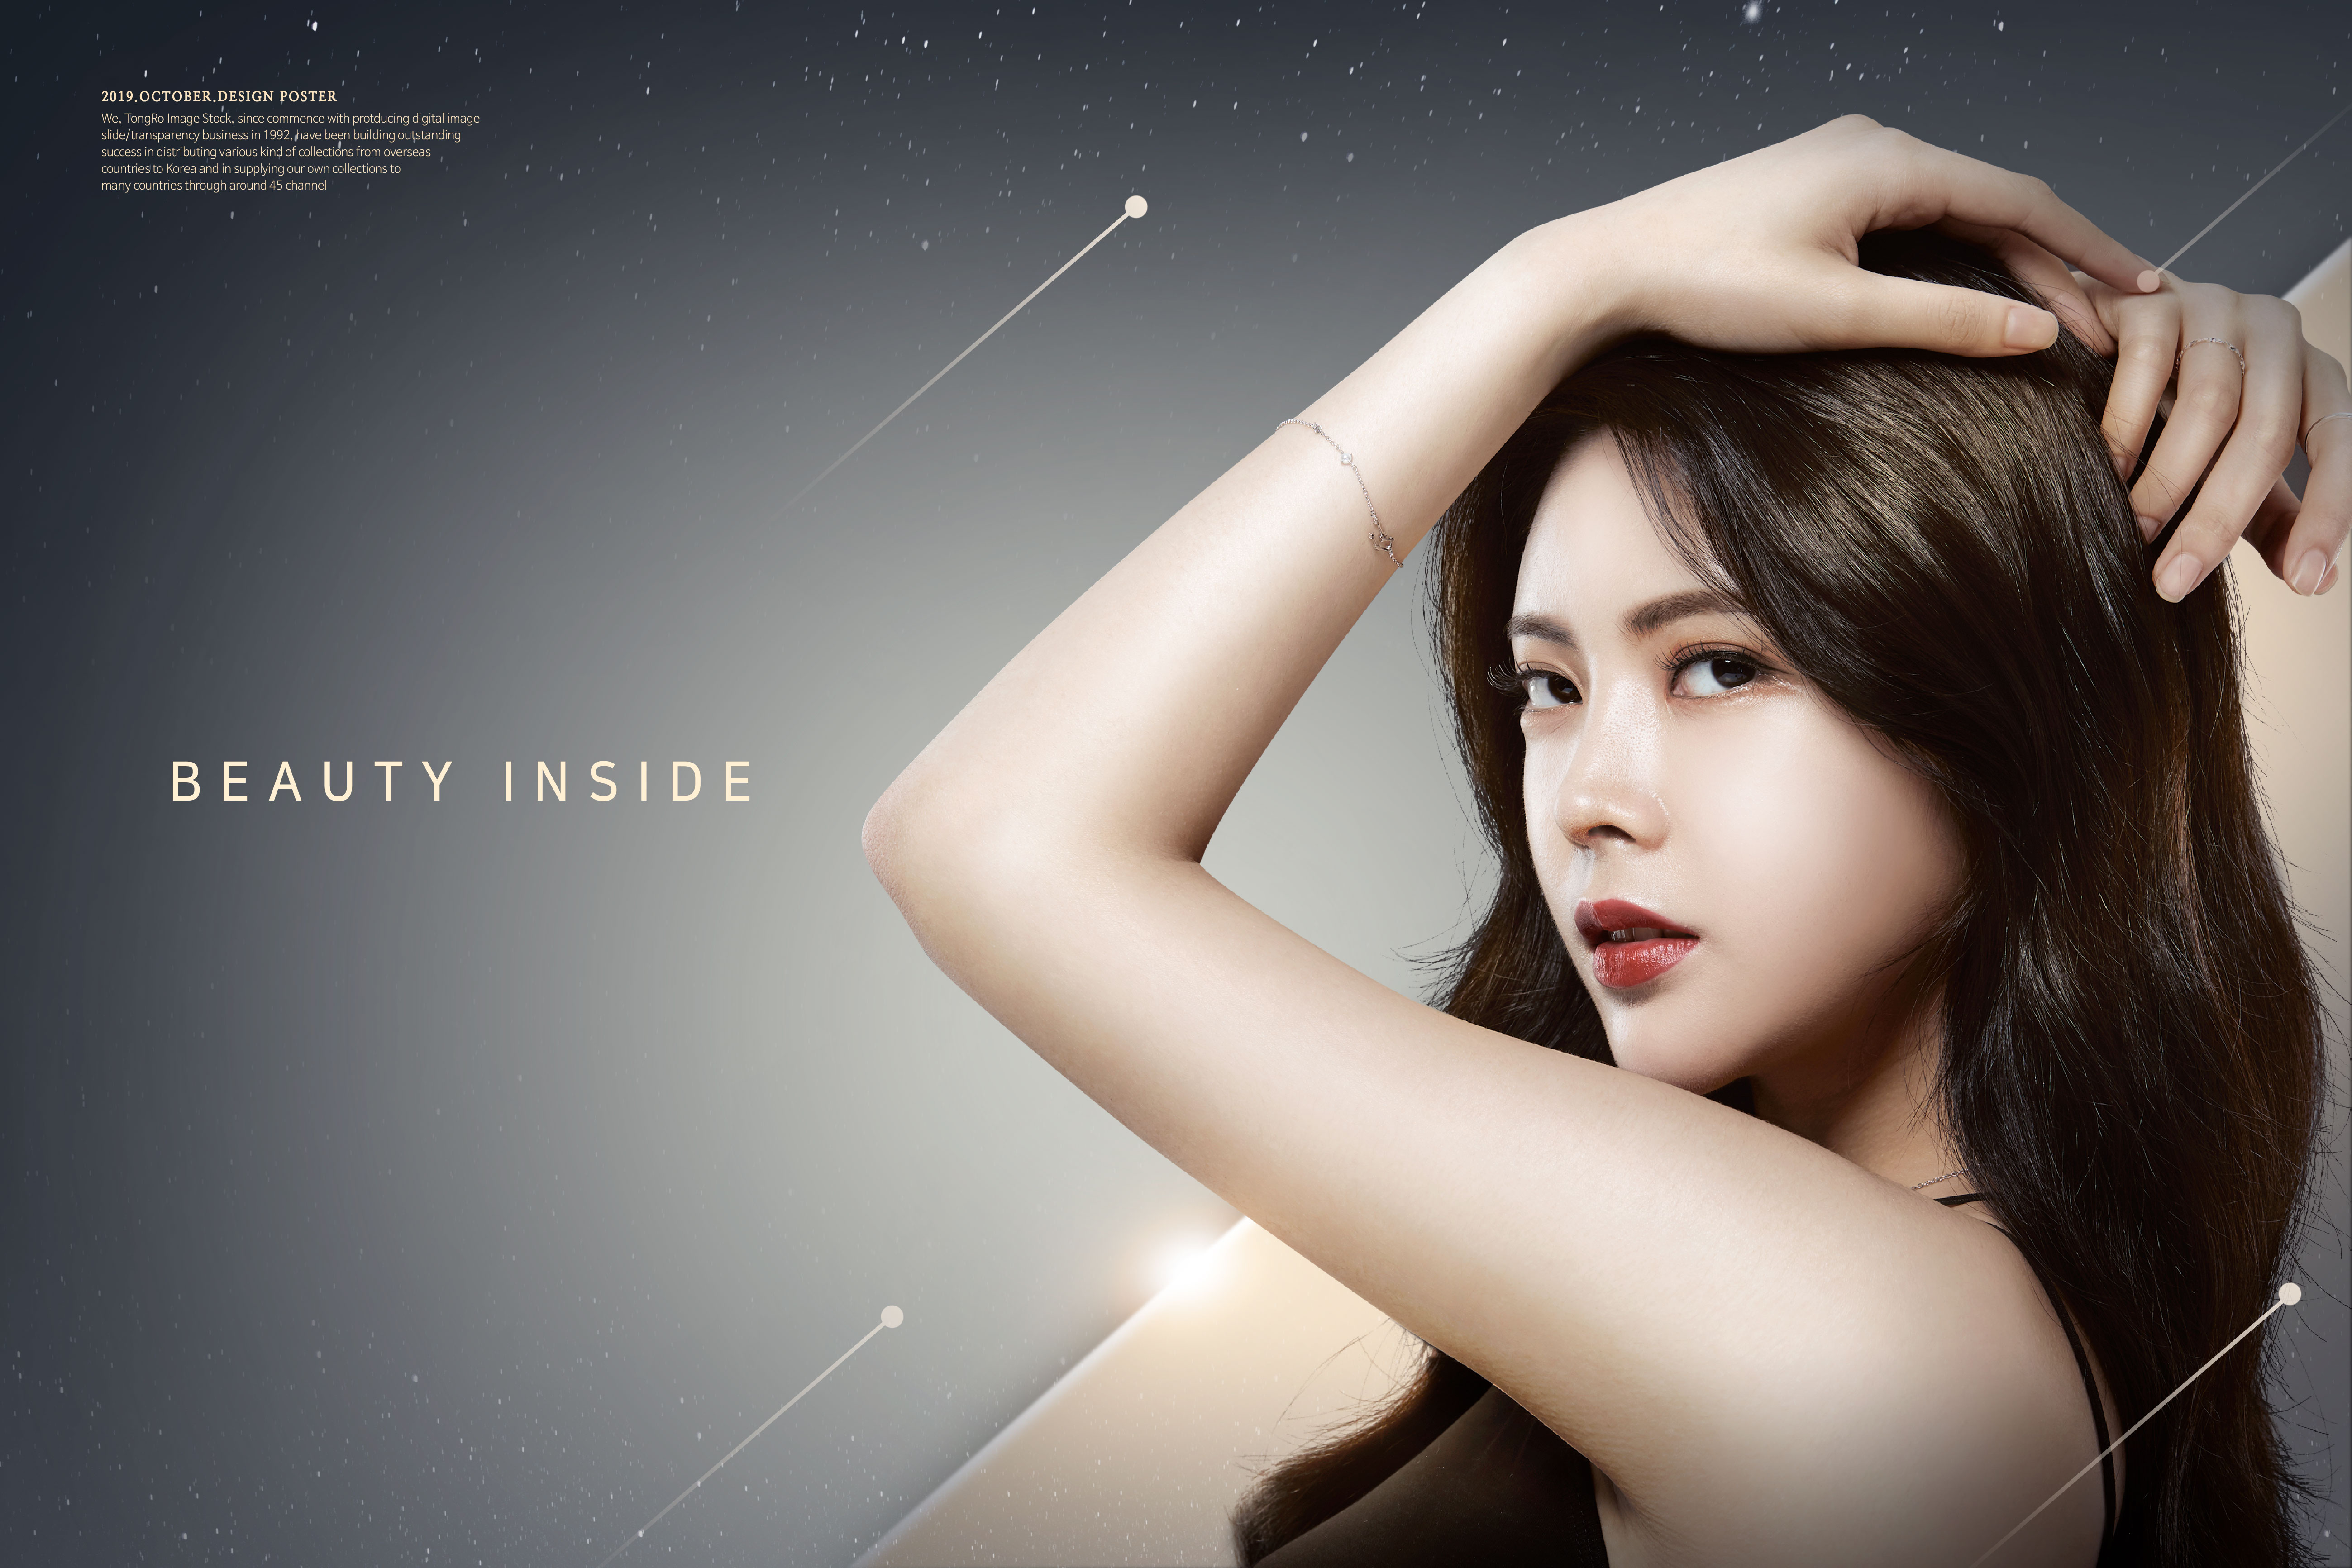 韩国气质美女美容化妆品广告海报模板套装[PSD]插图(4)